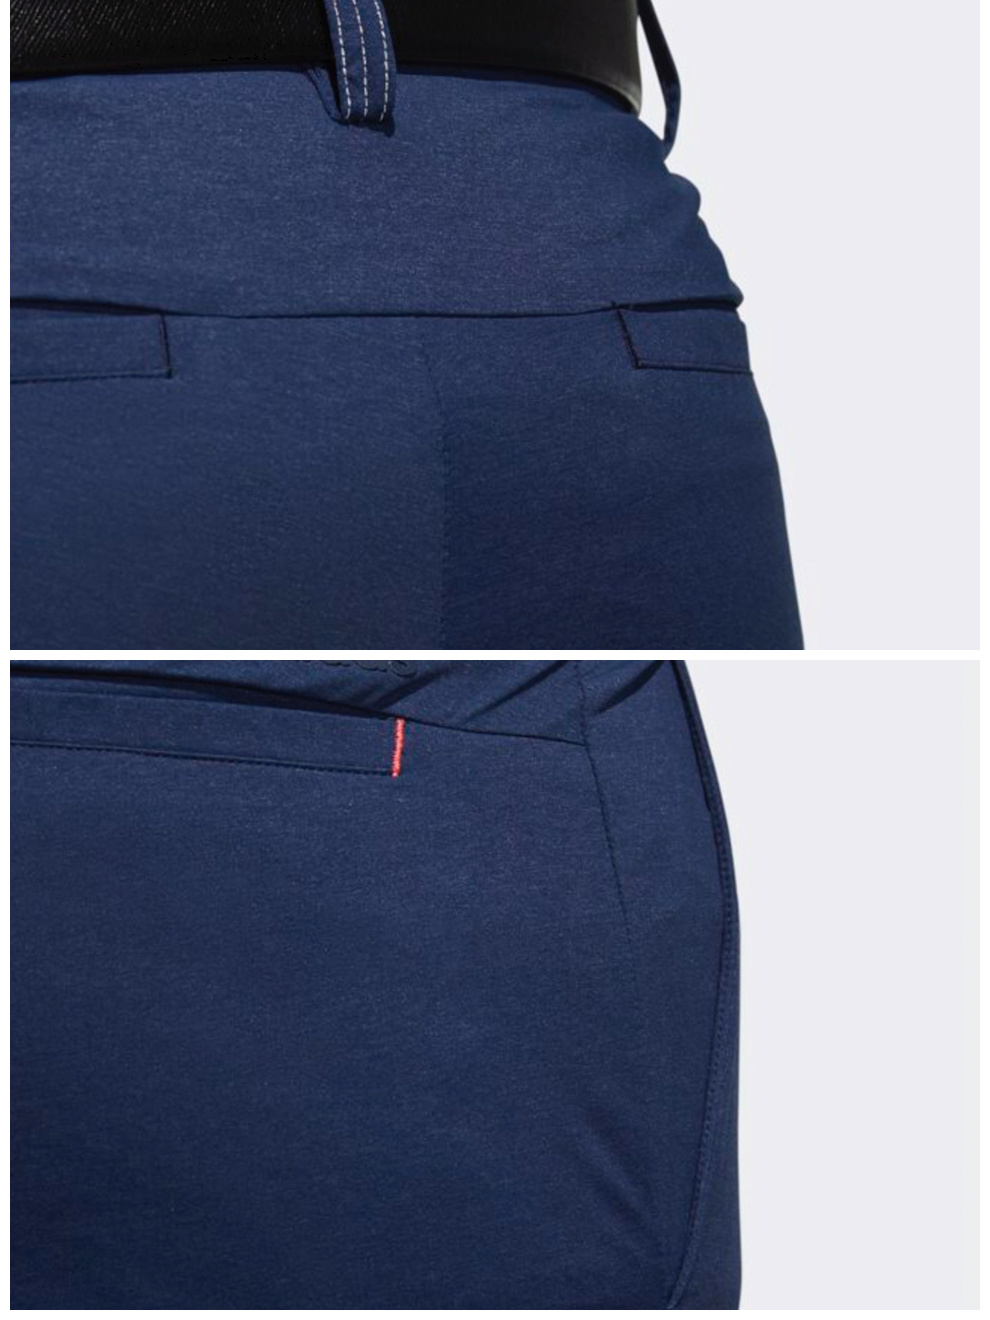 【新品】Adidas阿迪达斯高尔夫服装男士运动长裤FJ3811学院藏青蓝